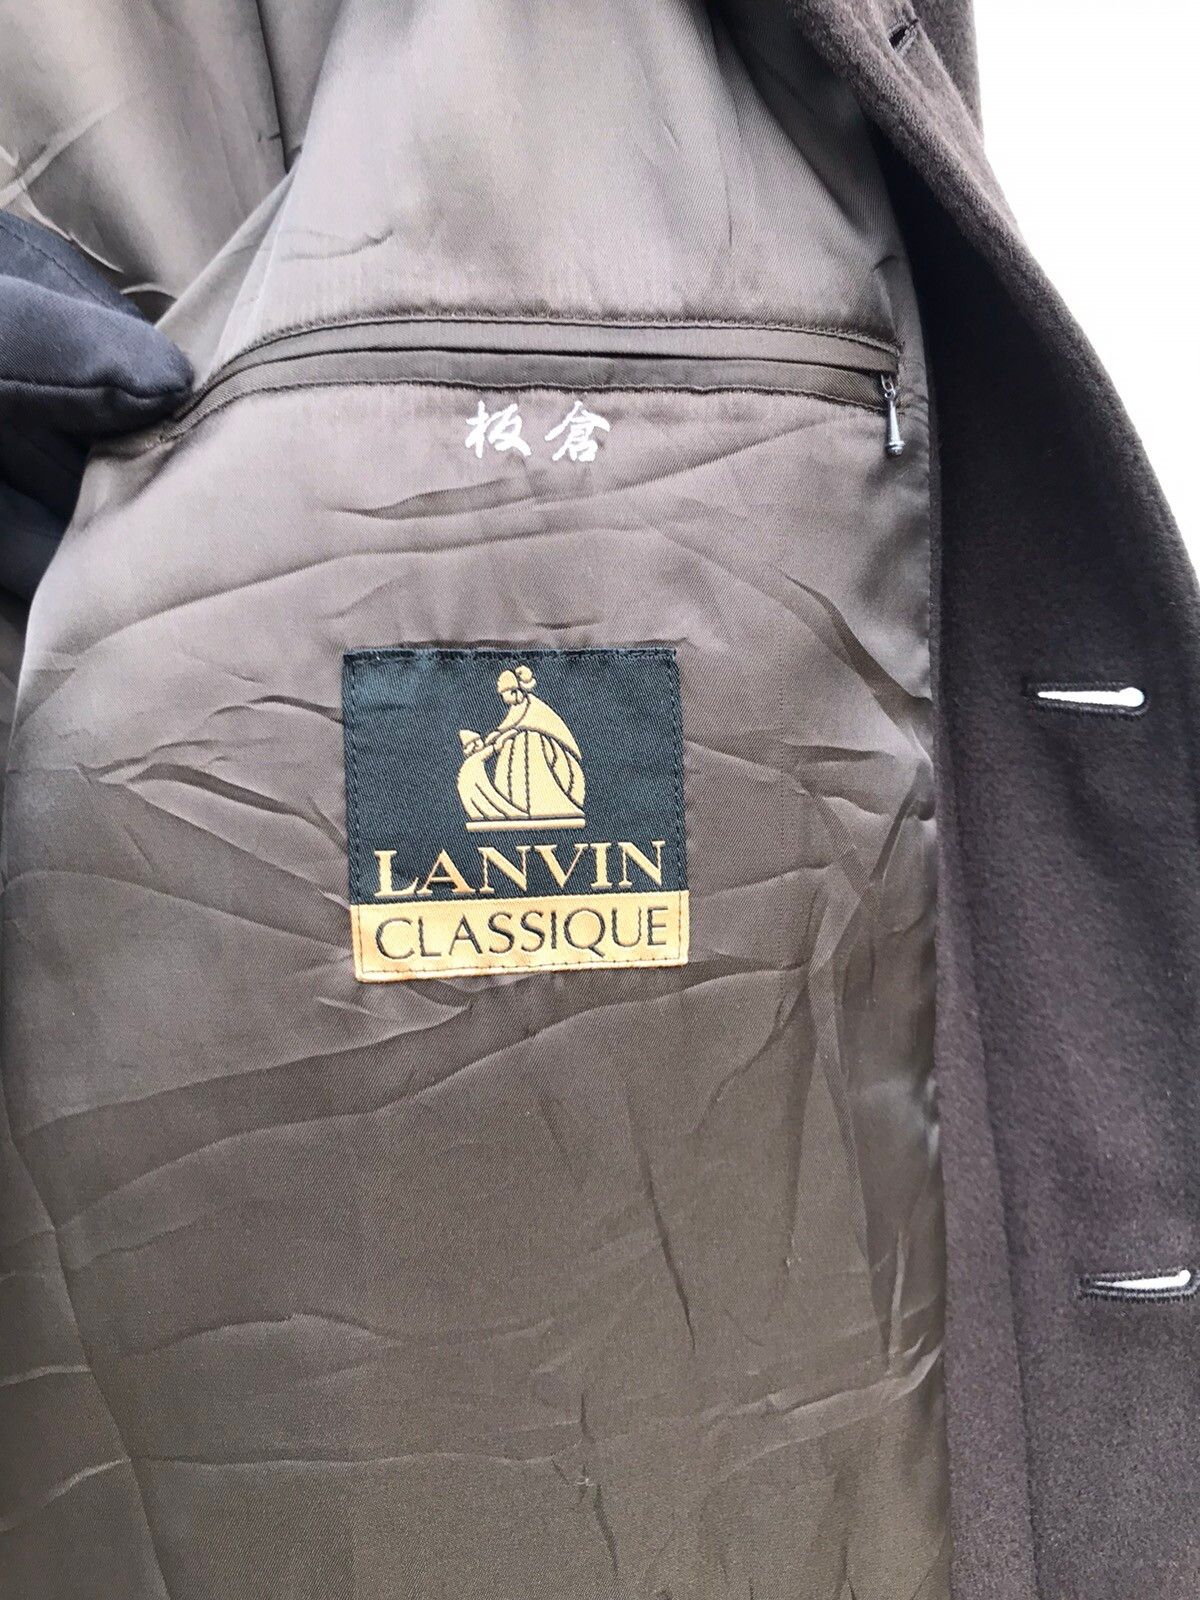 Lanvin Classique Wool Jacket Brown Colour - 3